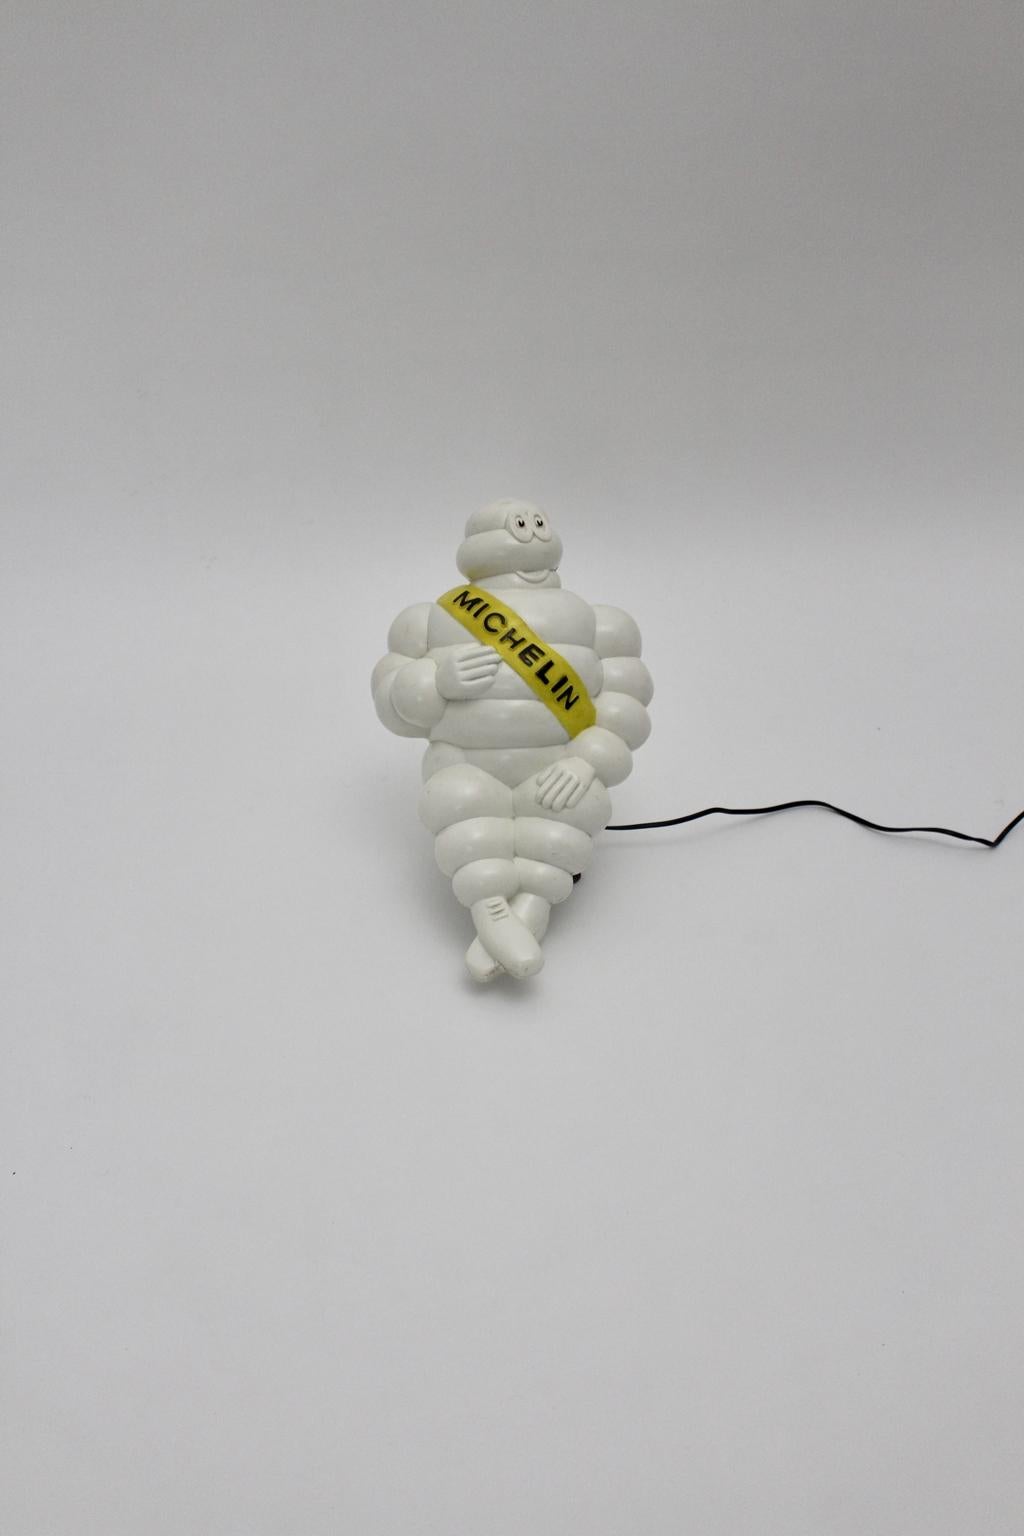 Panneau publicitaire Bibendum Michelin vintage blanc de l'âge de l'espace en plastique des années 1960 en France. La lampe Bibendum est en plastique blanc et présente un ruban jaune en travers du corps avec l'emblème noir Michelin.
La lampe Bibendum